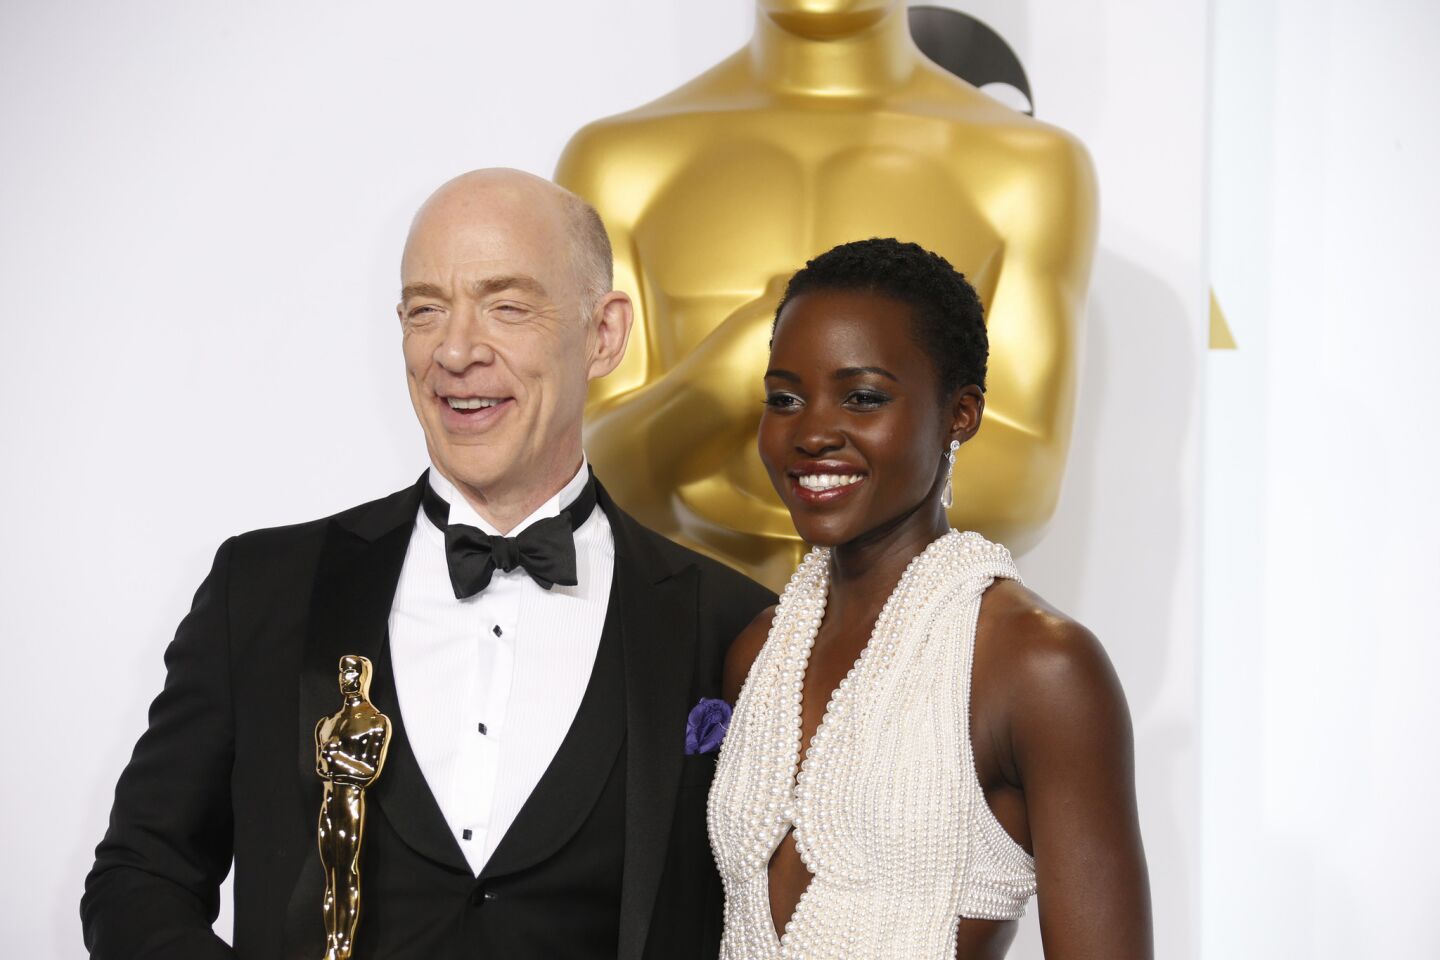 Oscars 2015 winners' room | J.K. Simmons and presenter Lupita Nyong'o